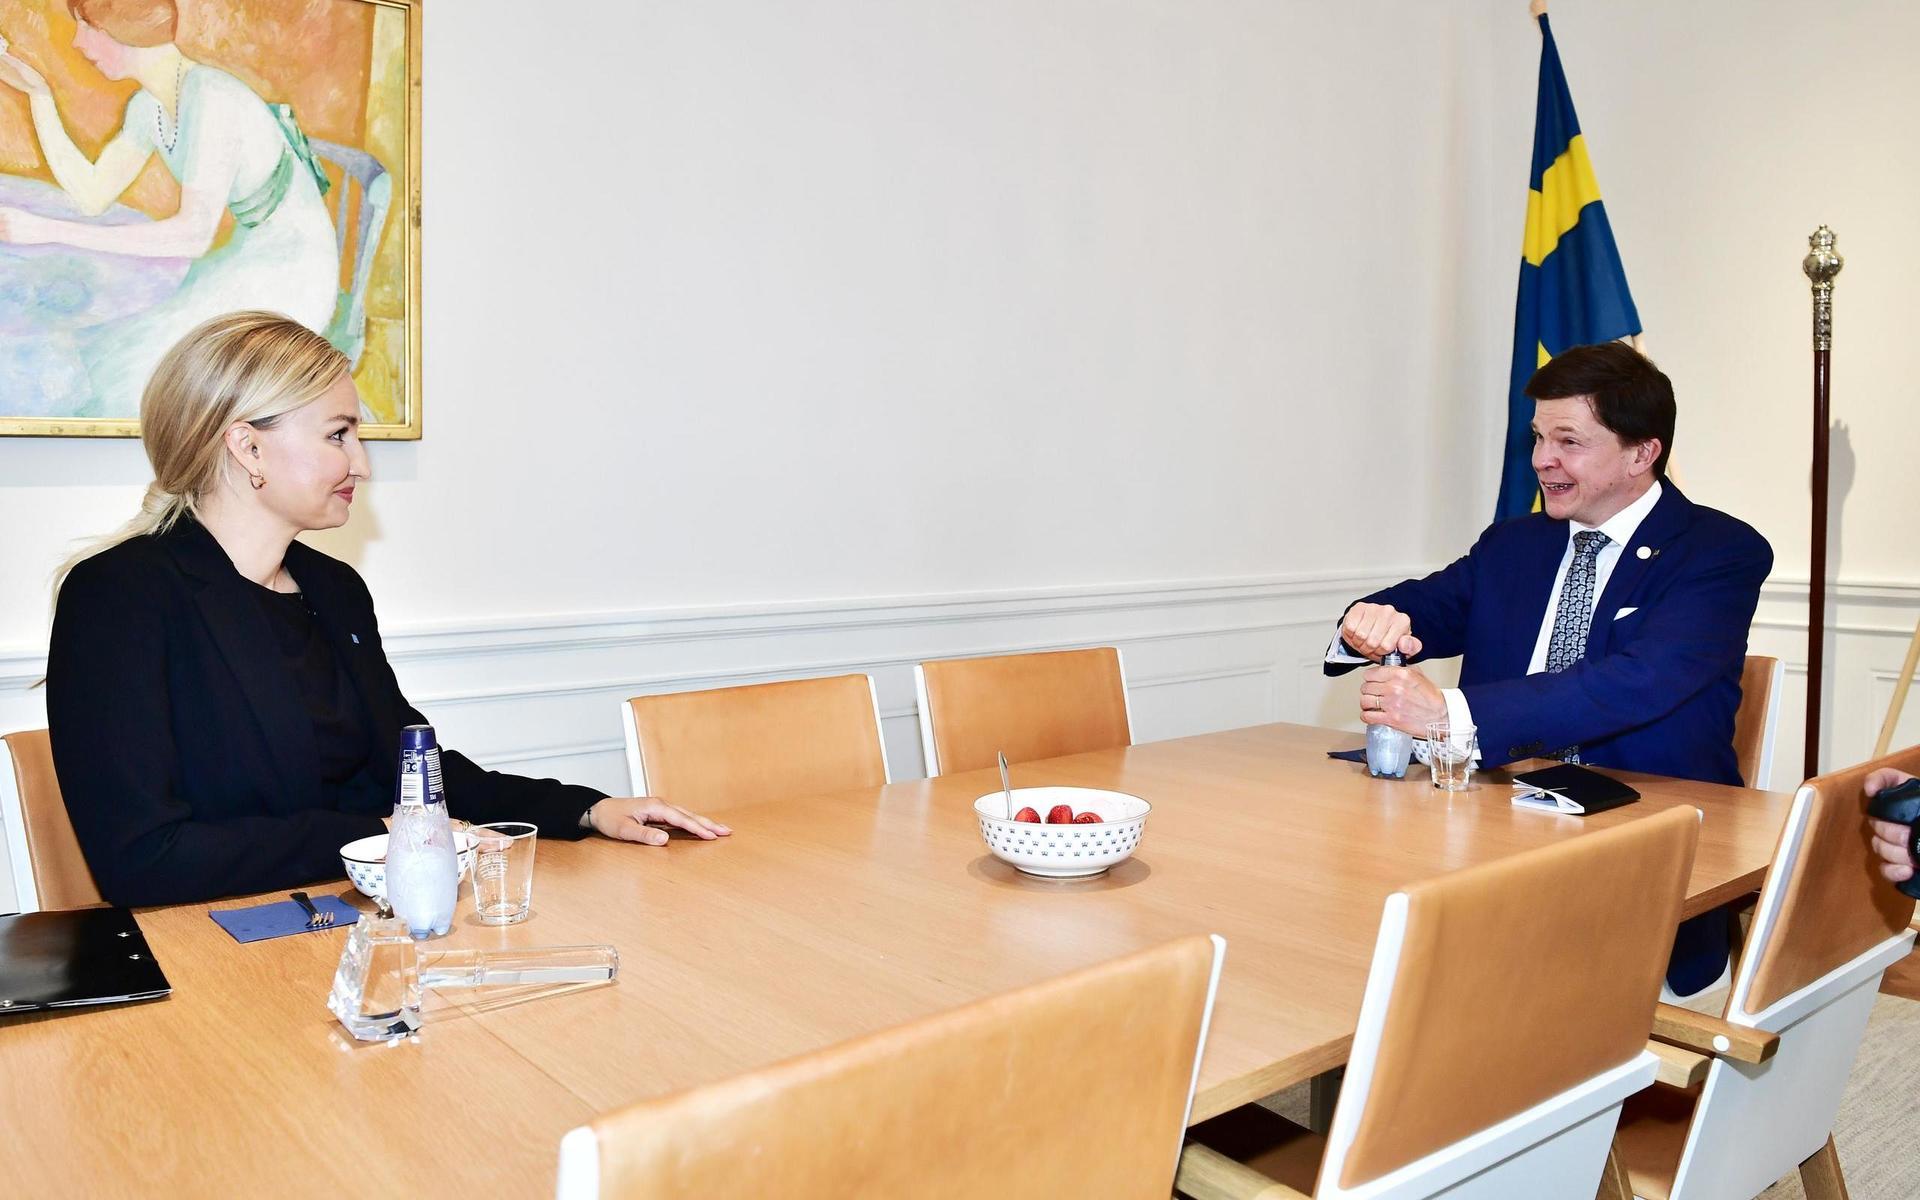 Kristdemokraternas partiledare Ebba Busch (KD) tas emot av Riksdagens talman Andreas Norlén.